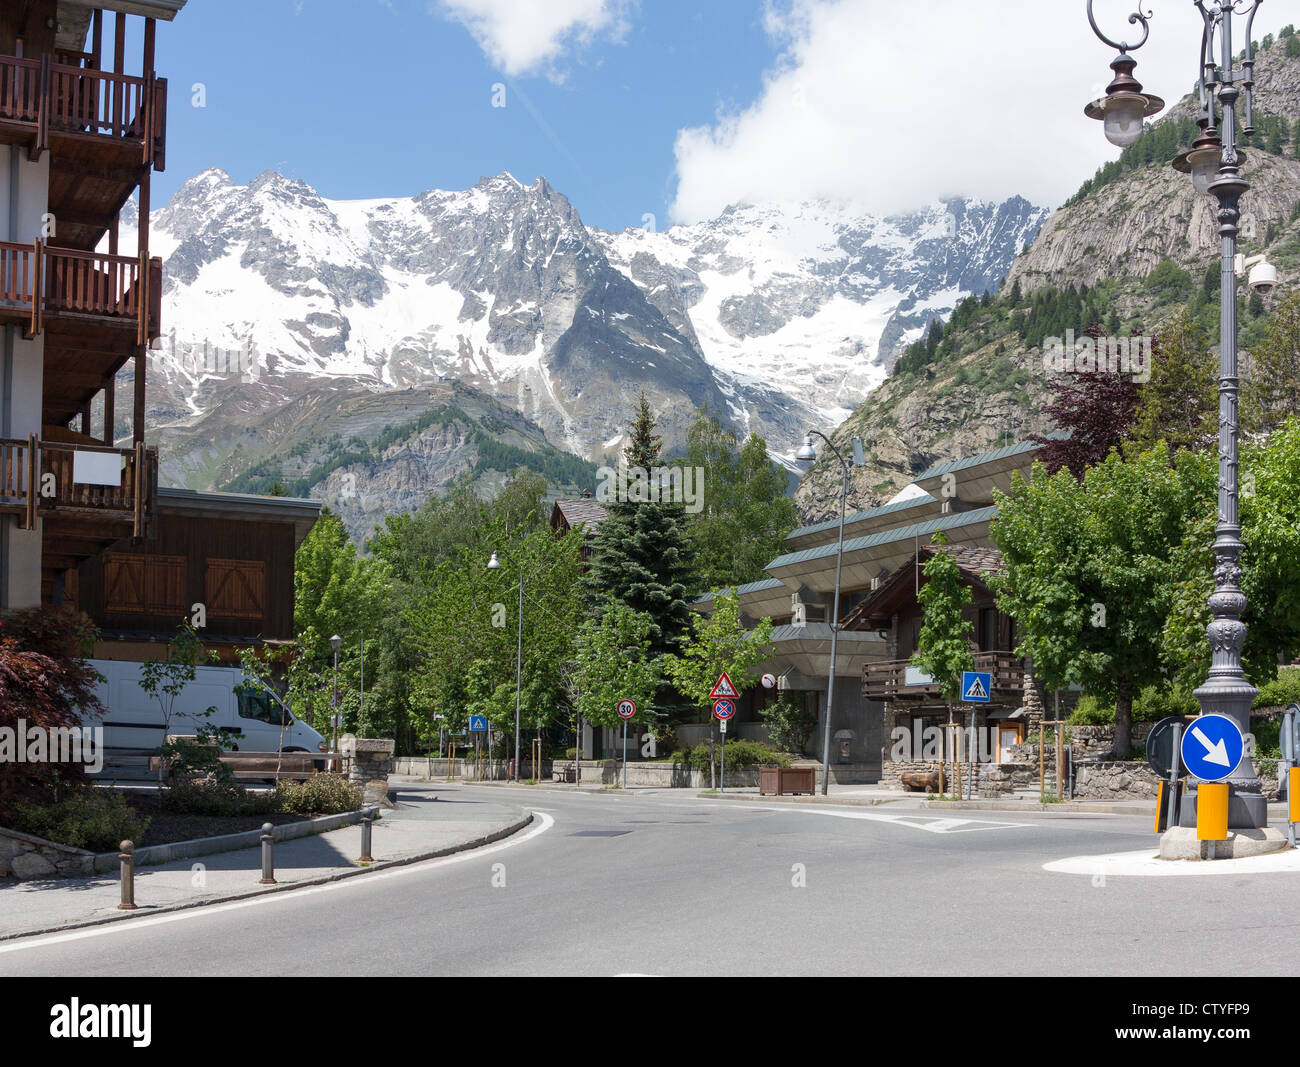 La station de ski de Courmayeur en Italie et la chaîne de montagnes des Alpes dominée par le Mont Blanc. Banque D'Images